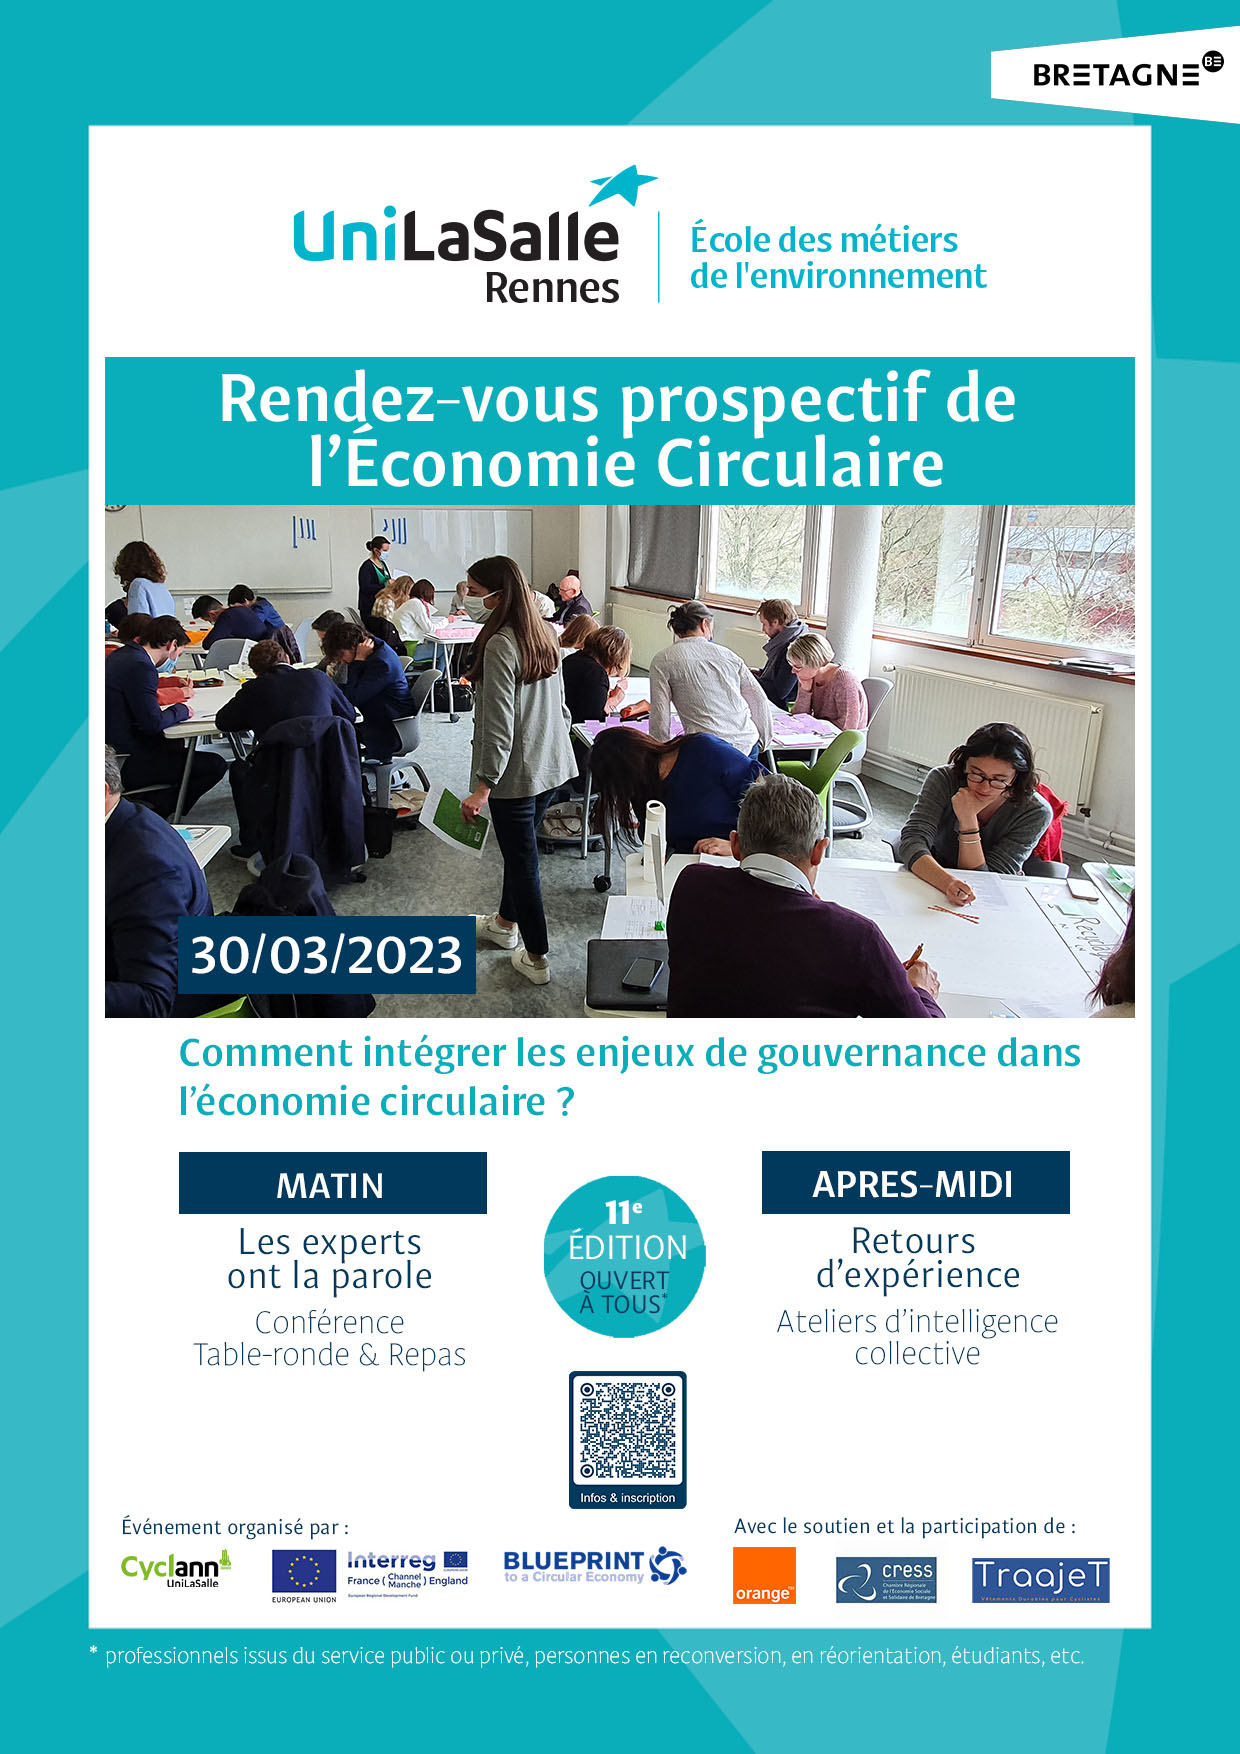 Rendez-vous prospectif de l'économie circulaire organisé par UniLaSalle Rennes, école des métiers de l'environnement